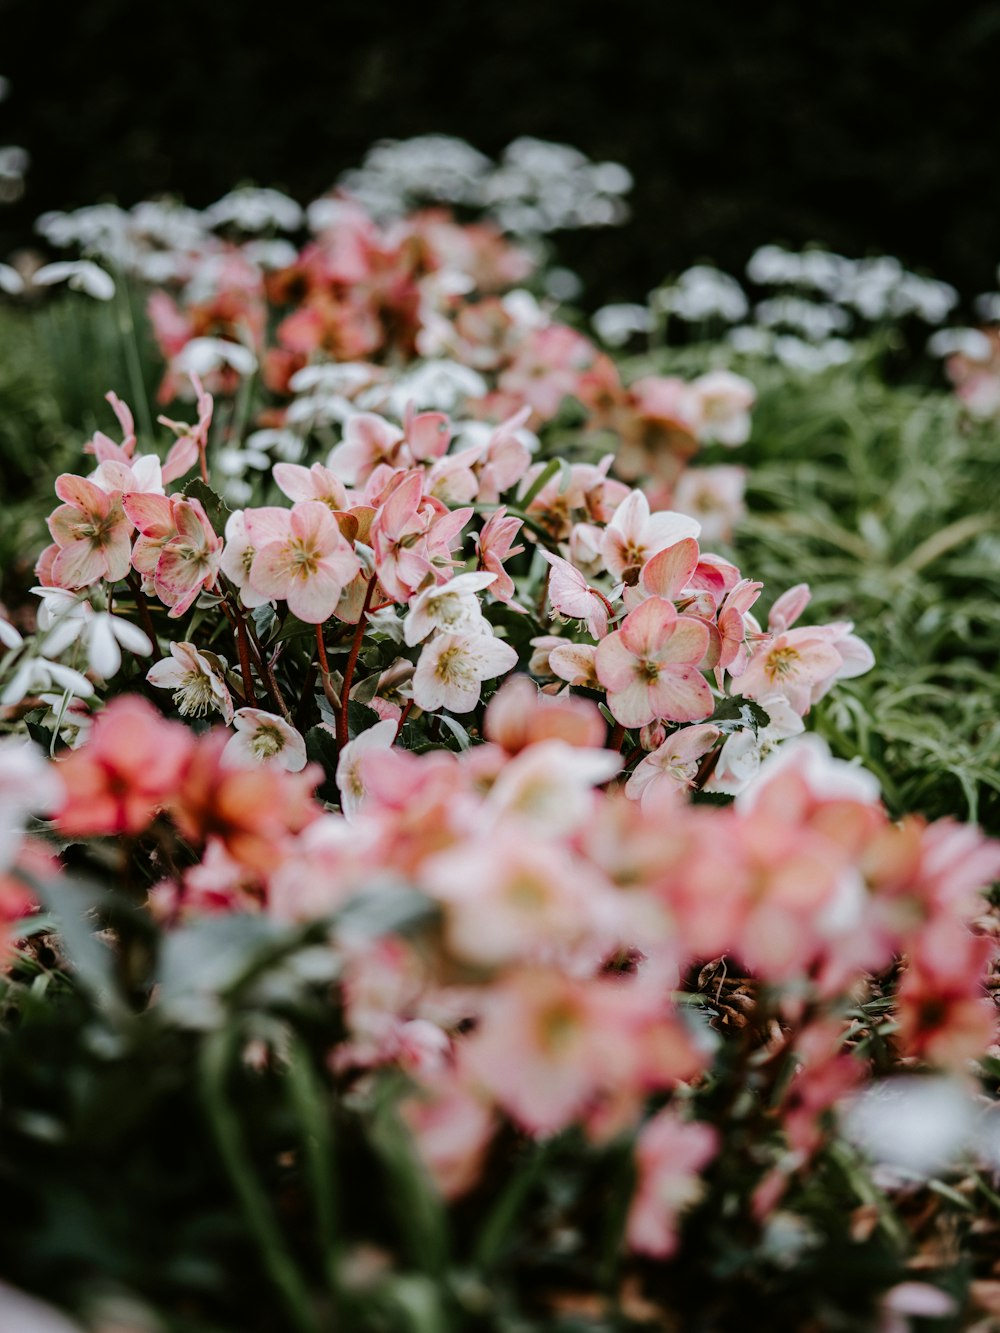 Photographie sélective de fleurs aux pétales blancs et roses